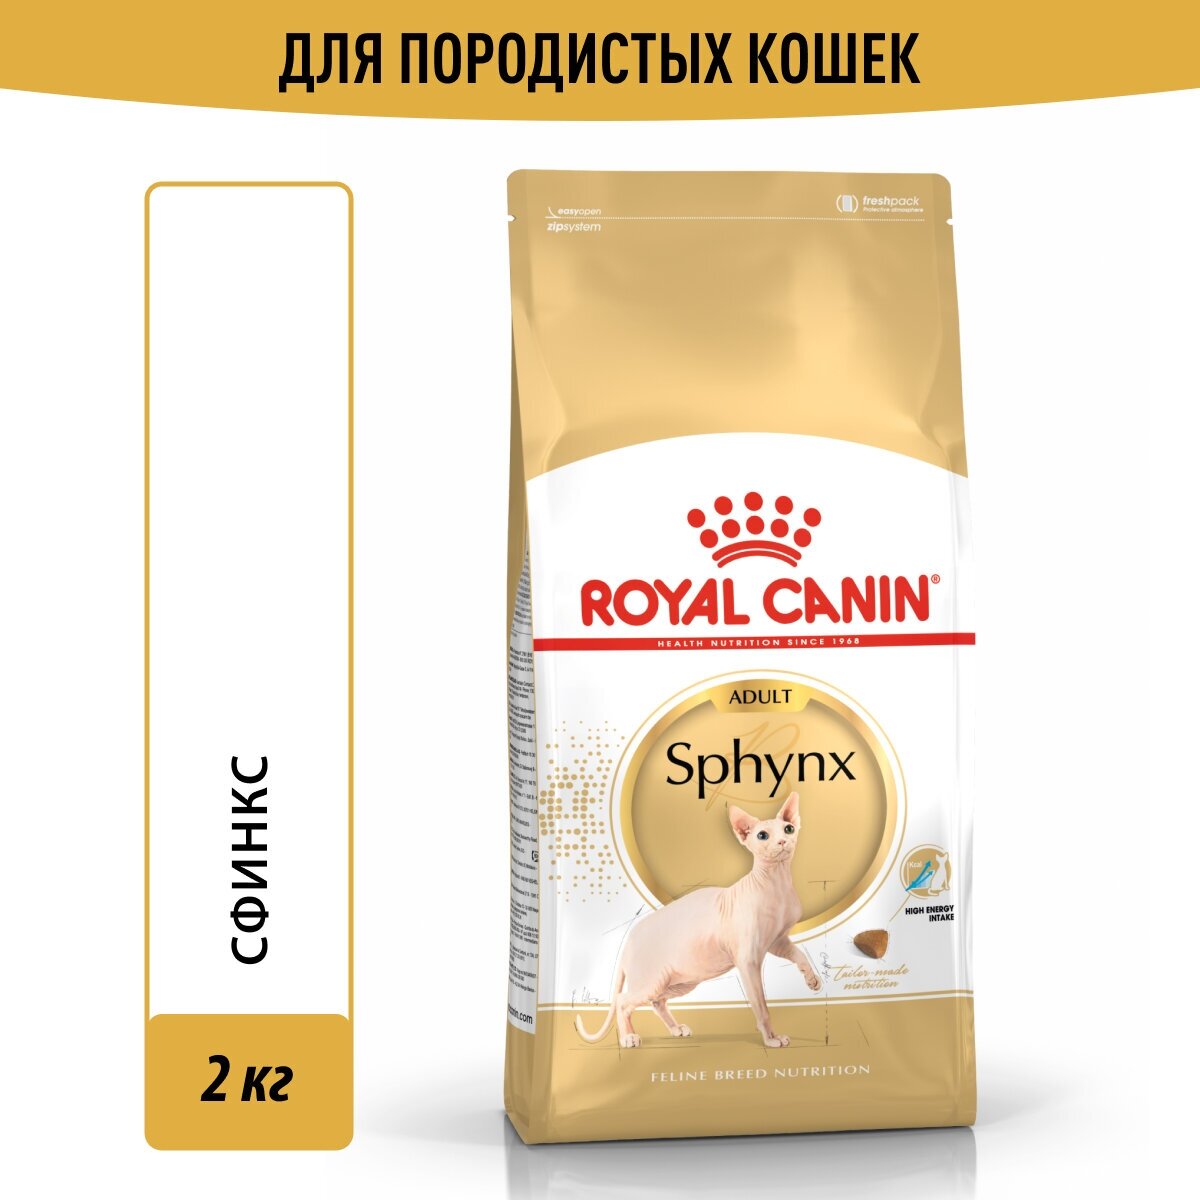 Сухой корм Royal Canin Sphynx Adult (Сфинкс Эдалт) для взрослых кошек породы Сфинкс от 1 года до 12 лет, 2 кг купить товары для животных с быстрой доставкой на Яндекс Маркете